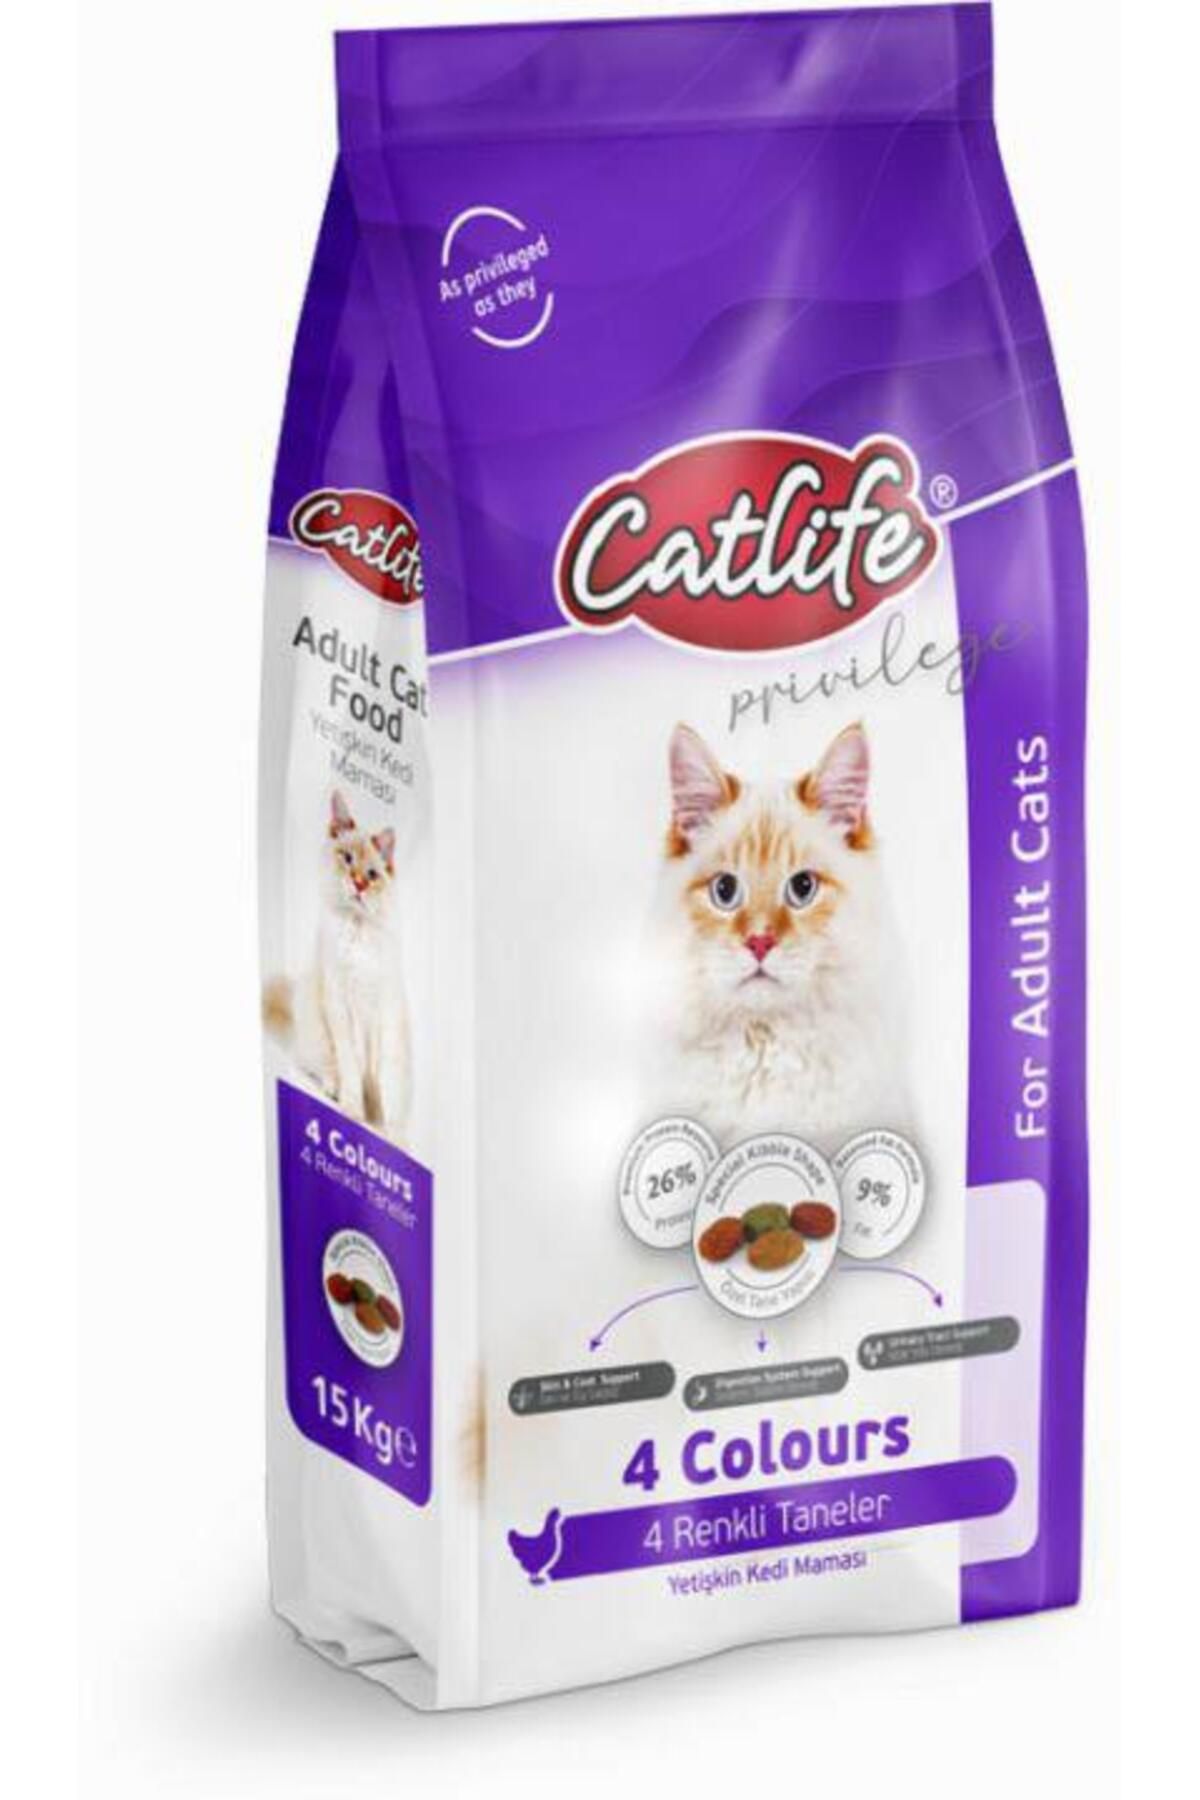 Catlife Tavuklu Multicolor Yetişkin Kedi Maması 15kg